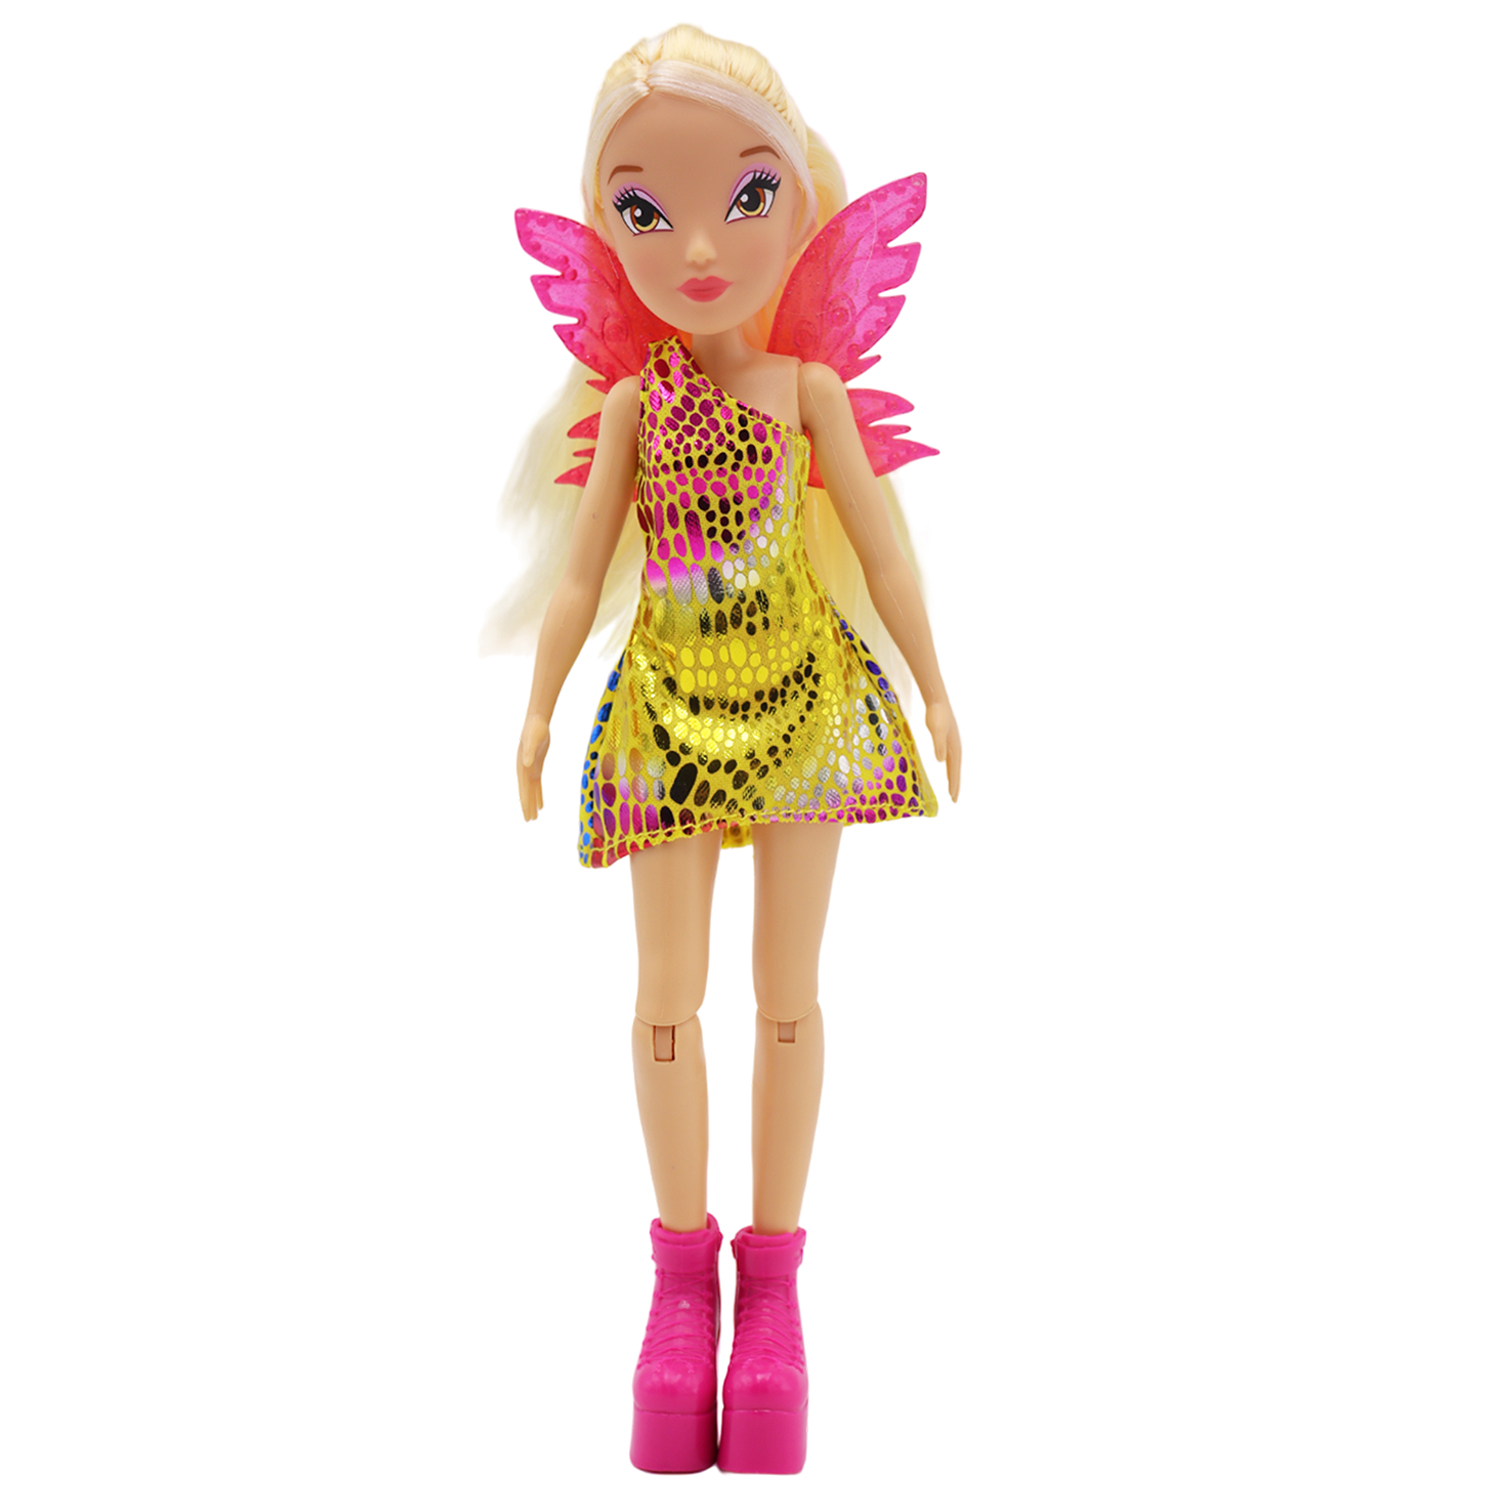 Кукла шарнирная Winx Club Стелла с крыльями, 24 см, IW01552303 шарнирная кукла winx club magic reveal стелла с крыльями 3 шт 24 см iw01302203